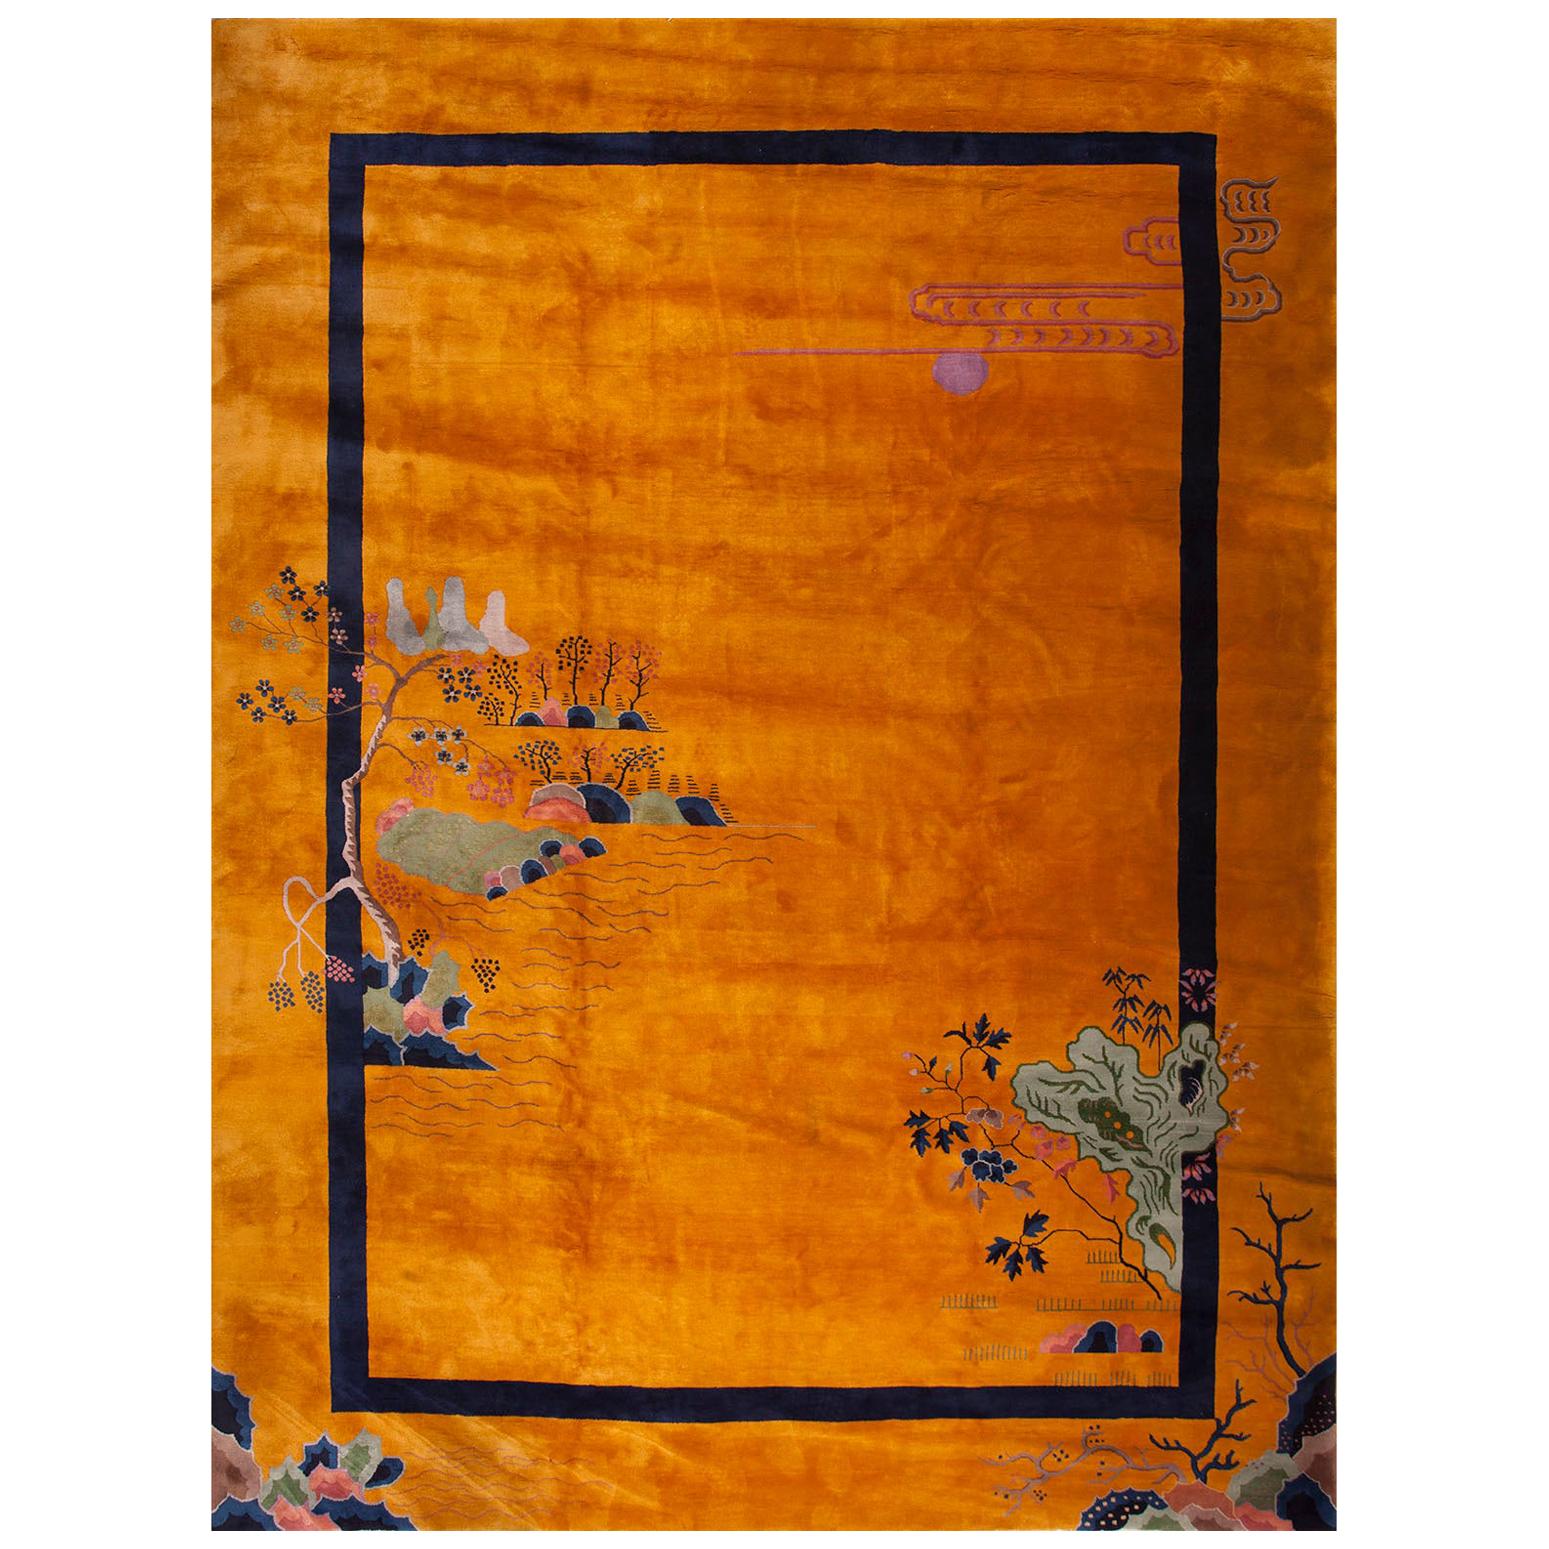 1920er Jahre Chinesischer Art Deco Teppich von Walter Nichols ( 11'2" x 15'4" - 340 x 467 )